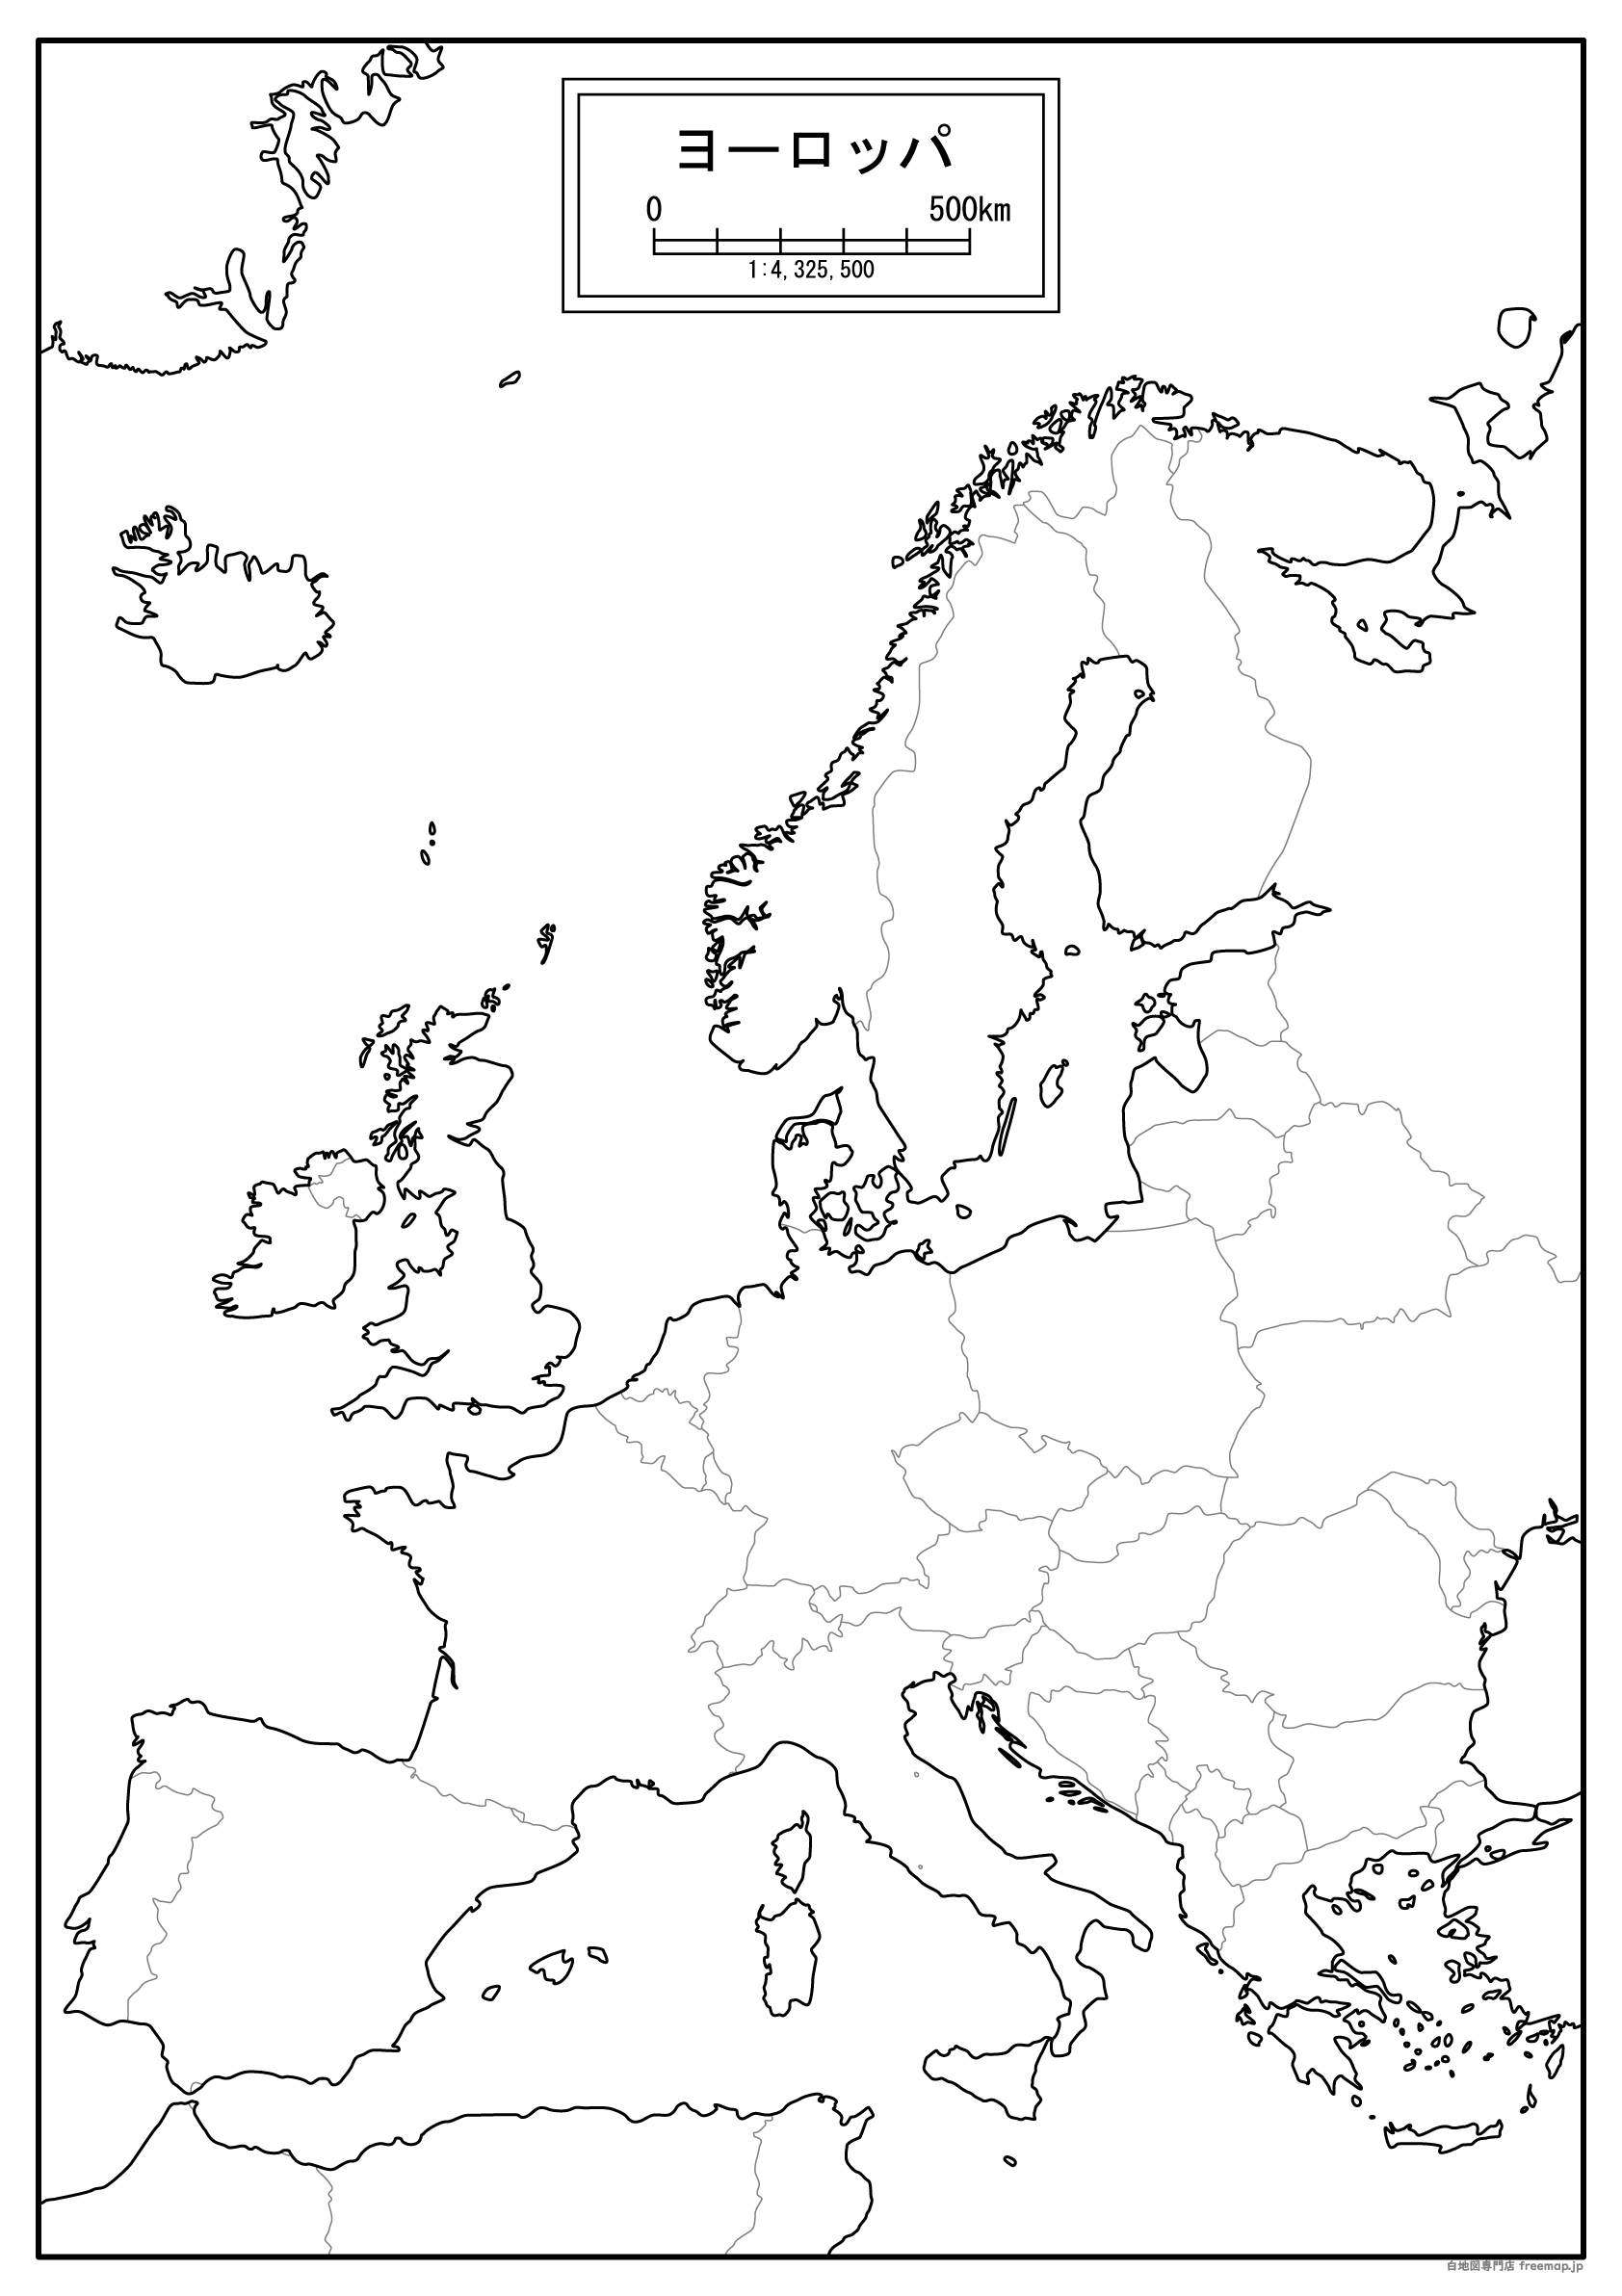 ヨーロッパのサムネイル